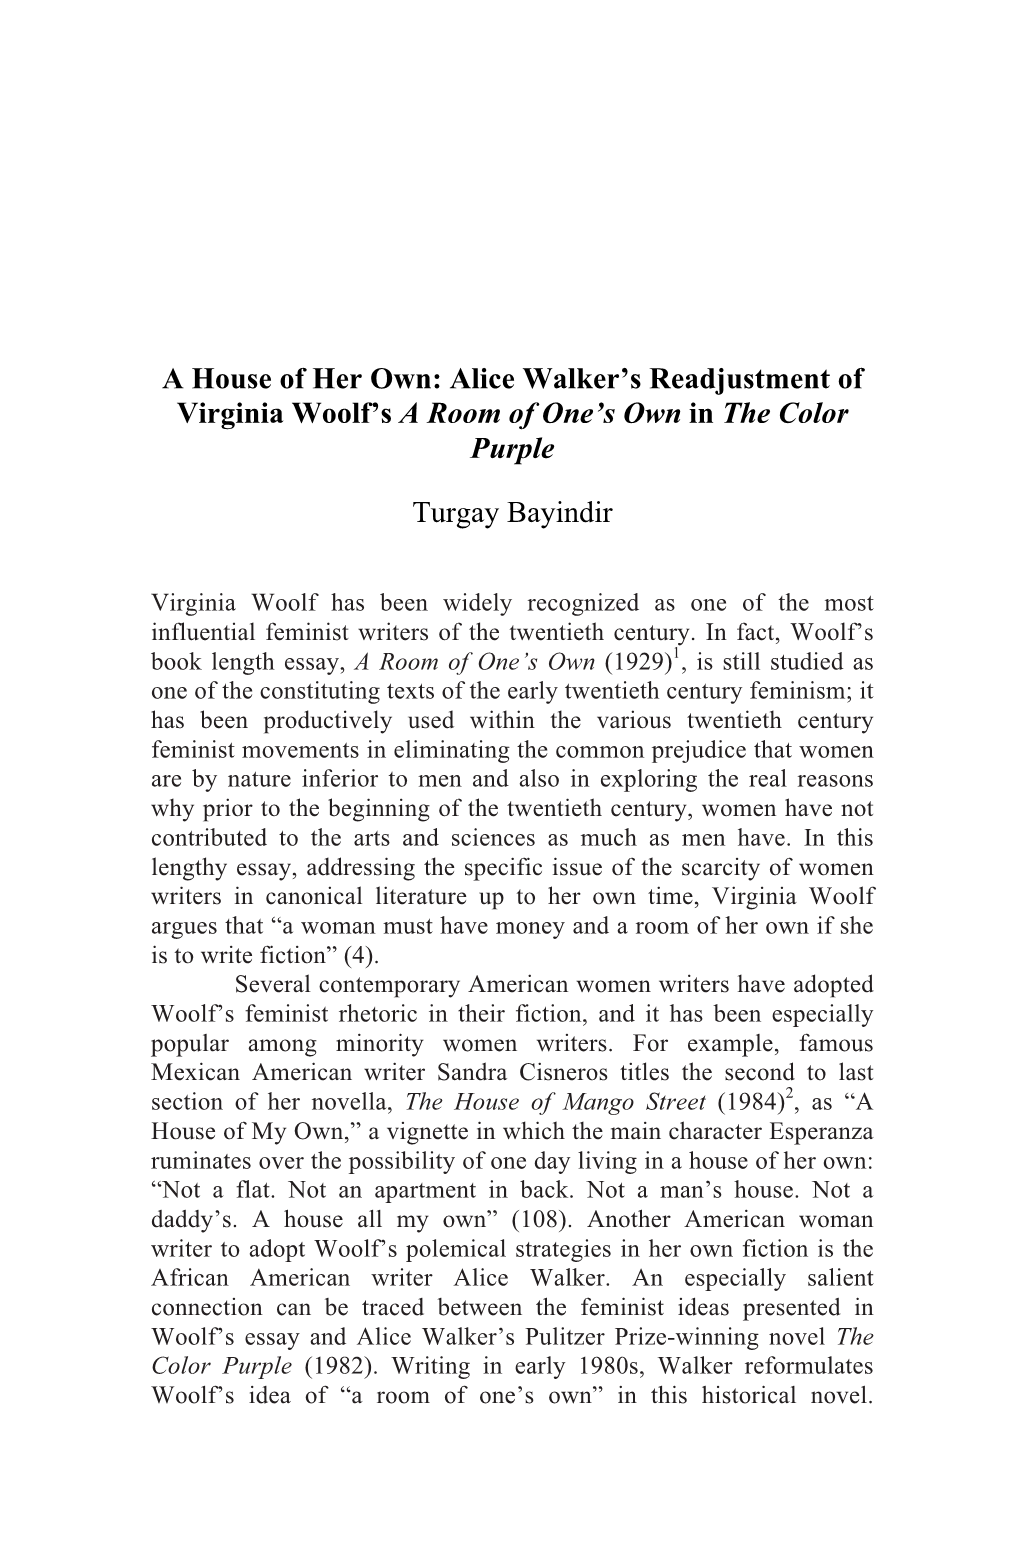 Alice Walker's Readjustment of Virginia Woolf's a Room Of